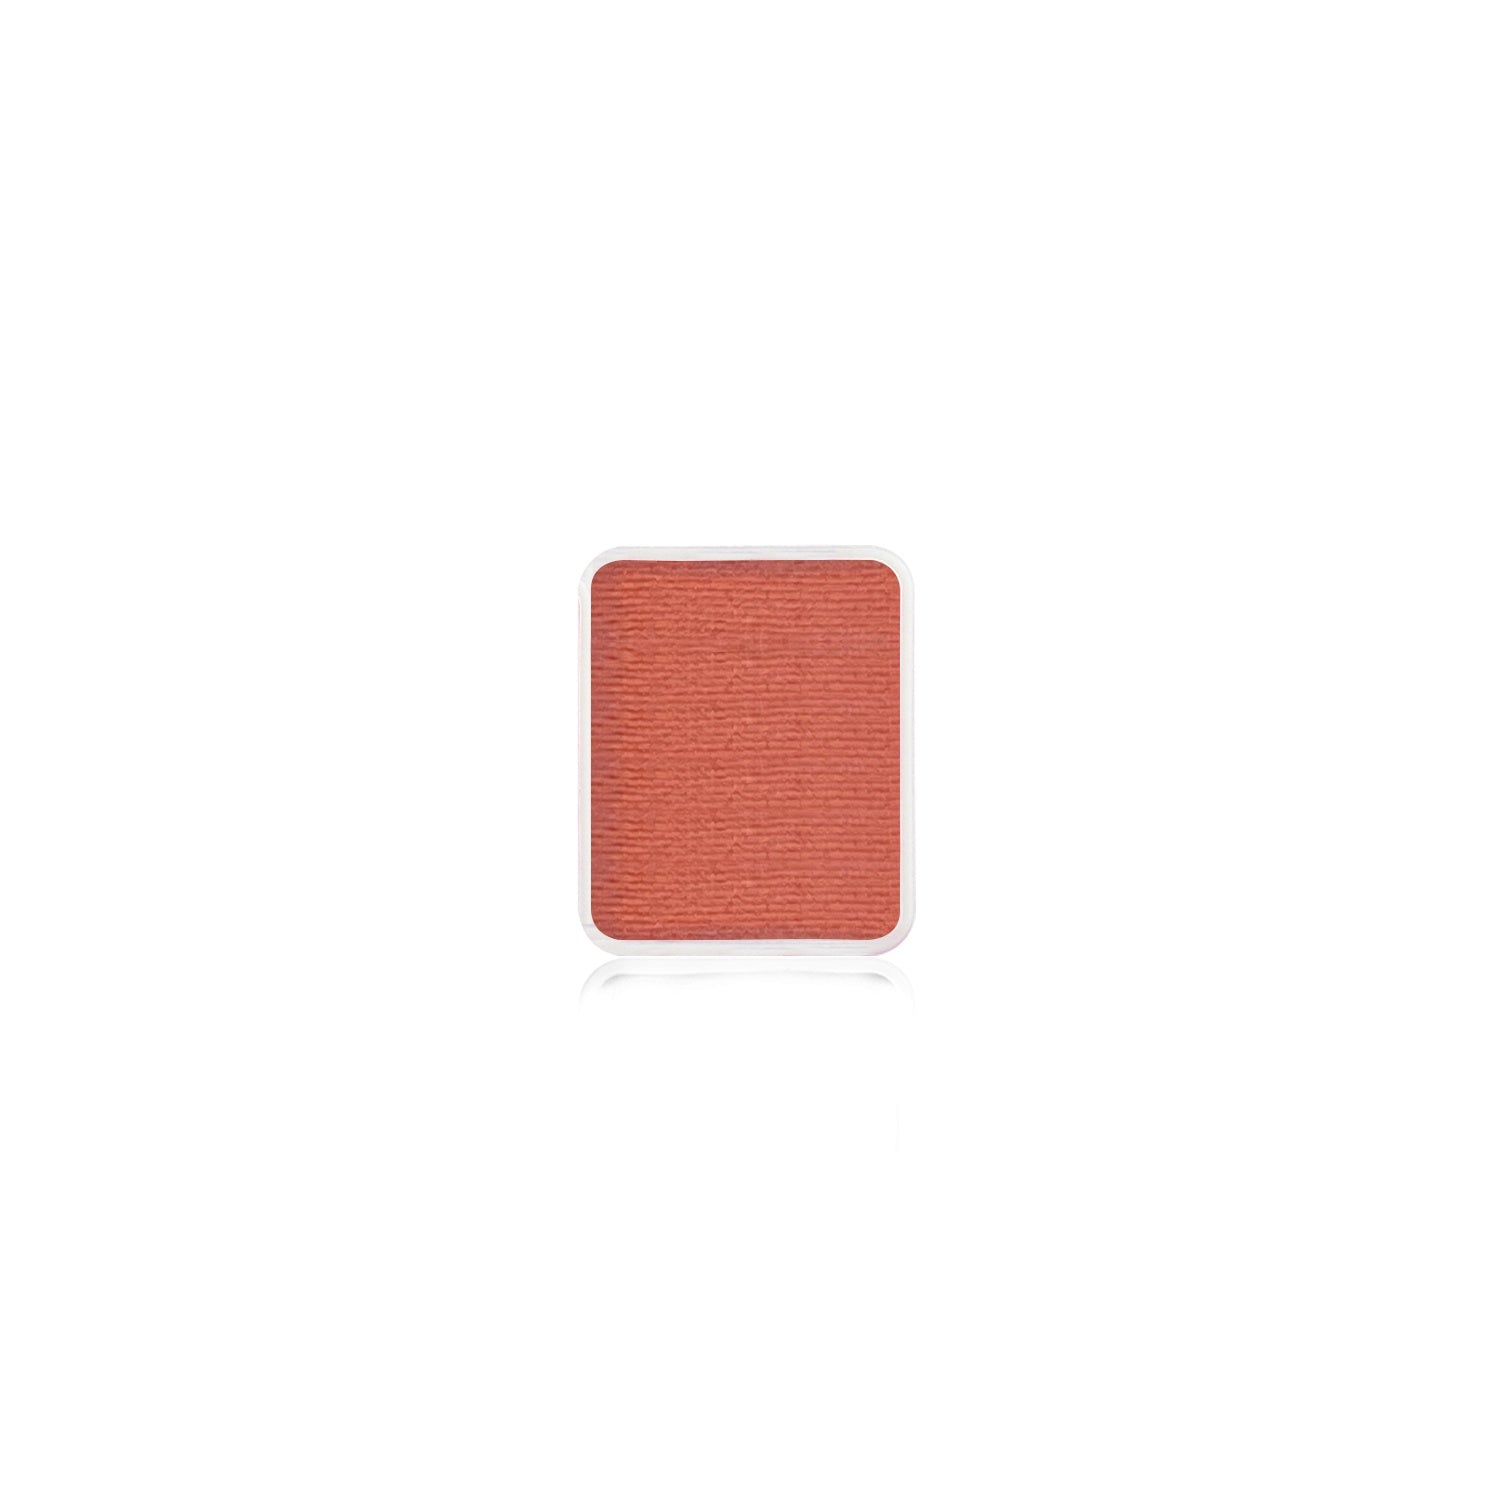 Kraze FX Face Paint Palette Refill - Orange (0.21 oz/6 gm)